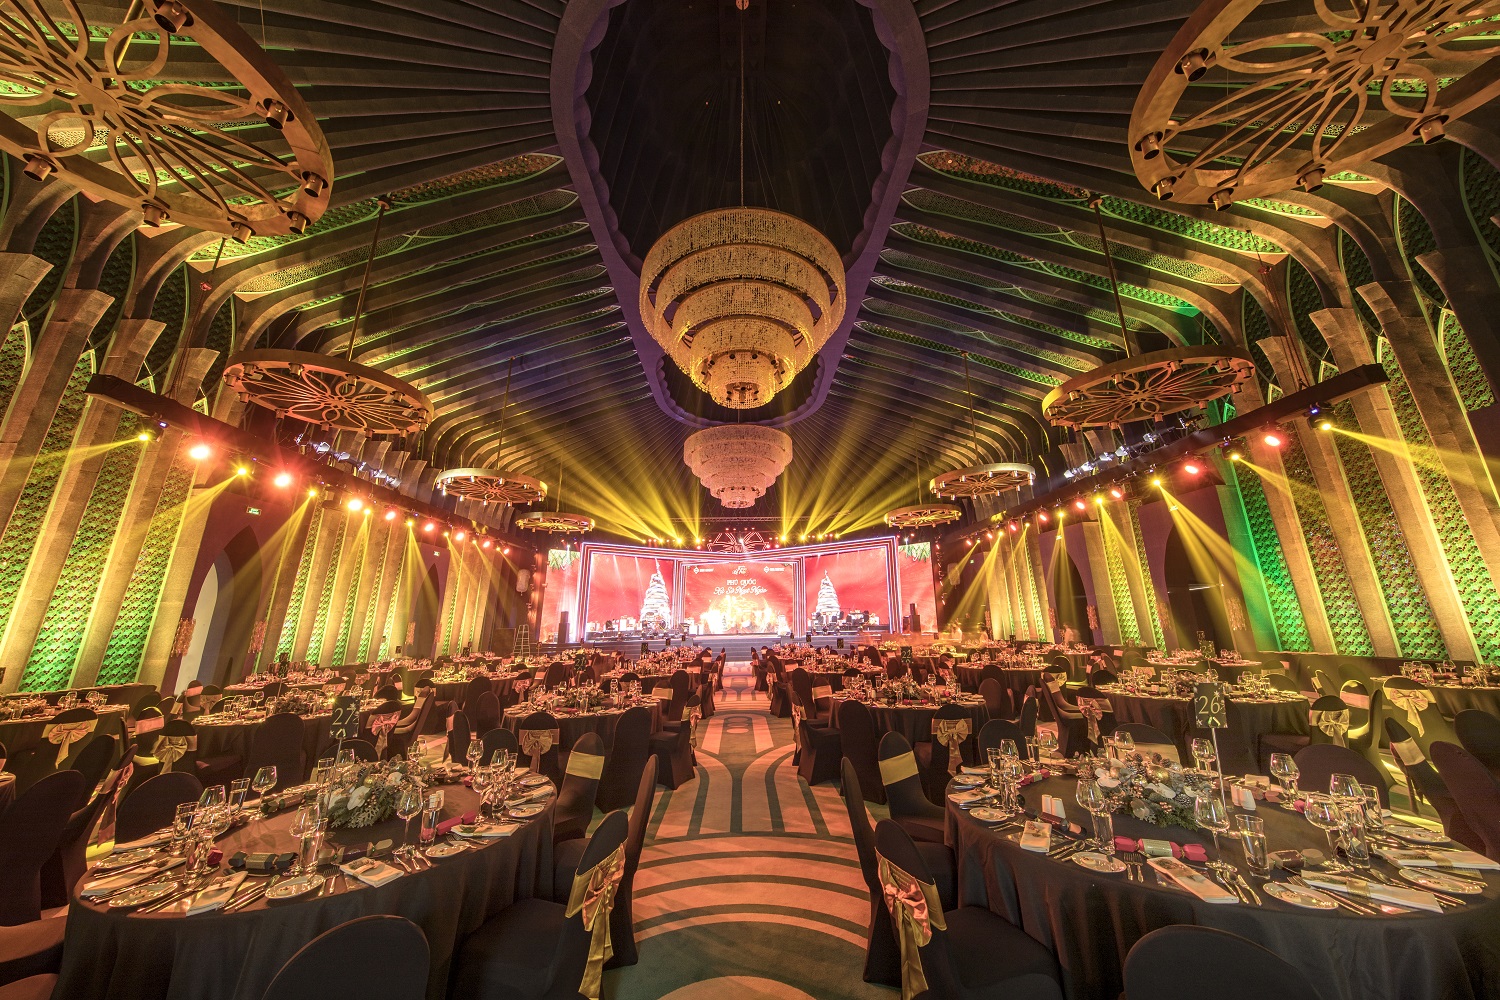 Siêu Ballroom được thiết kế cầu kỳ và trang bị hệ thống âm thanh, ánh sáng hiện đại